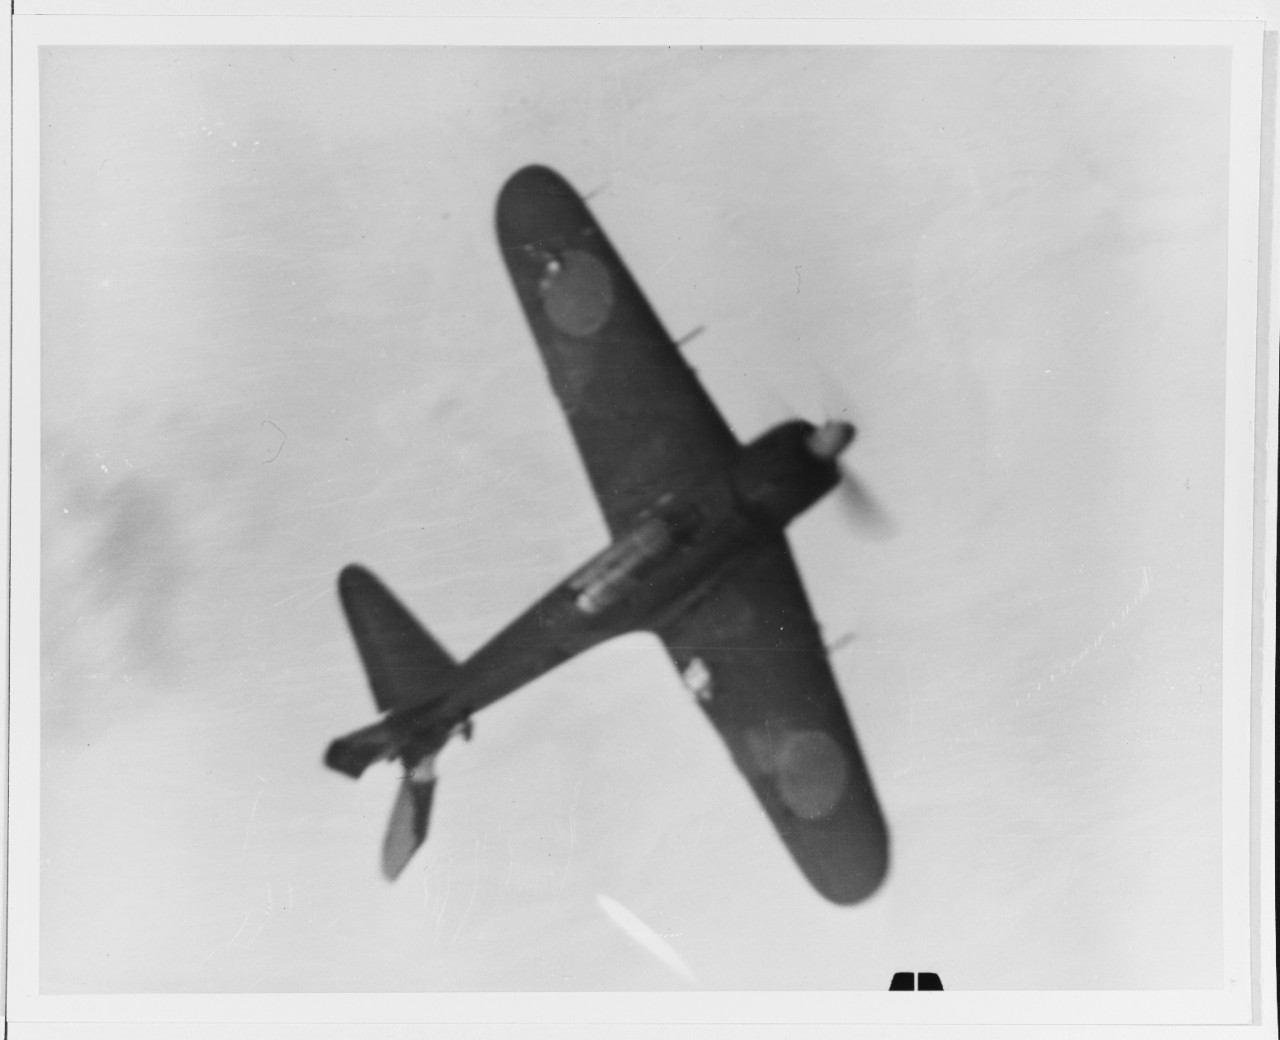 Japanese "Zeke" Kamikaze plane